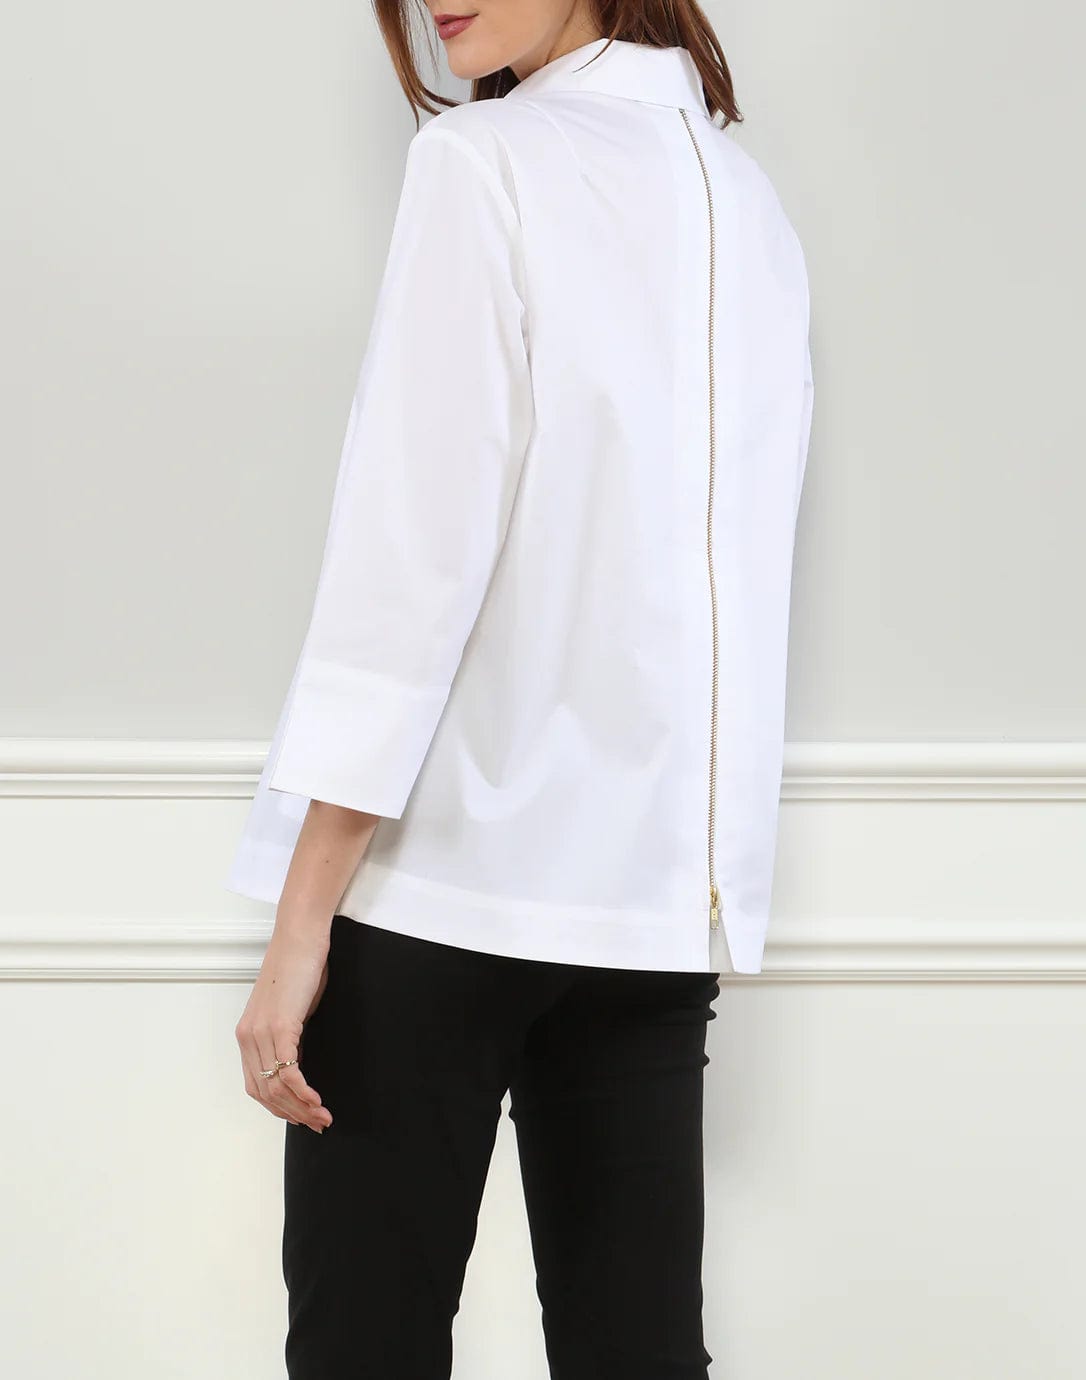 Hinson Wu Women's Shirts & Tops Xena 3/4 Sleeve Zip Back Shirt